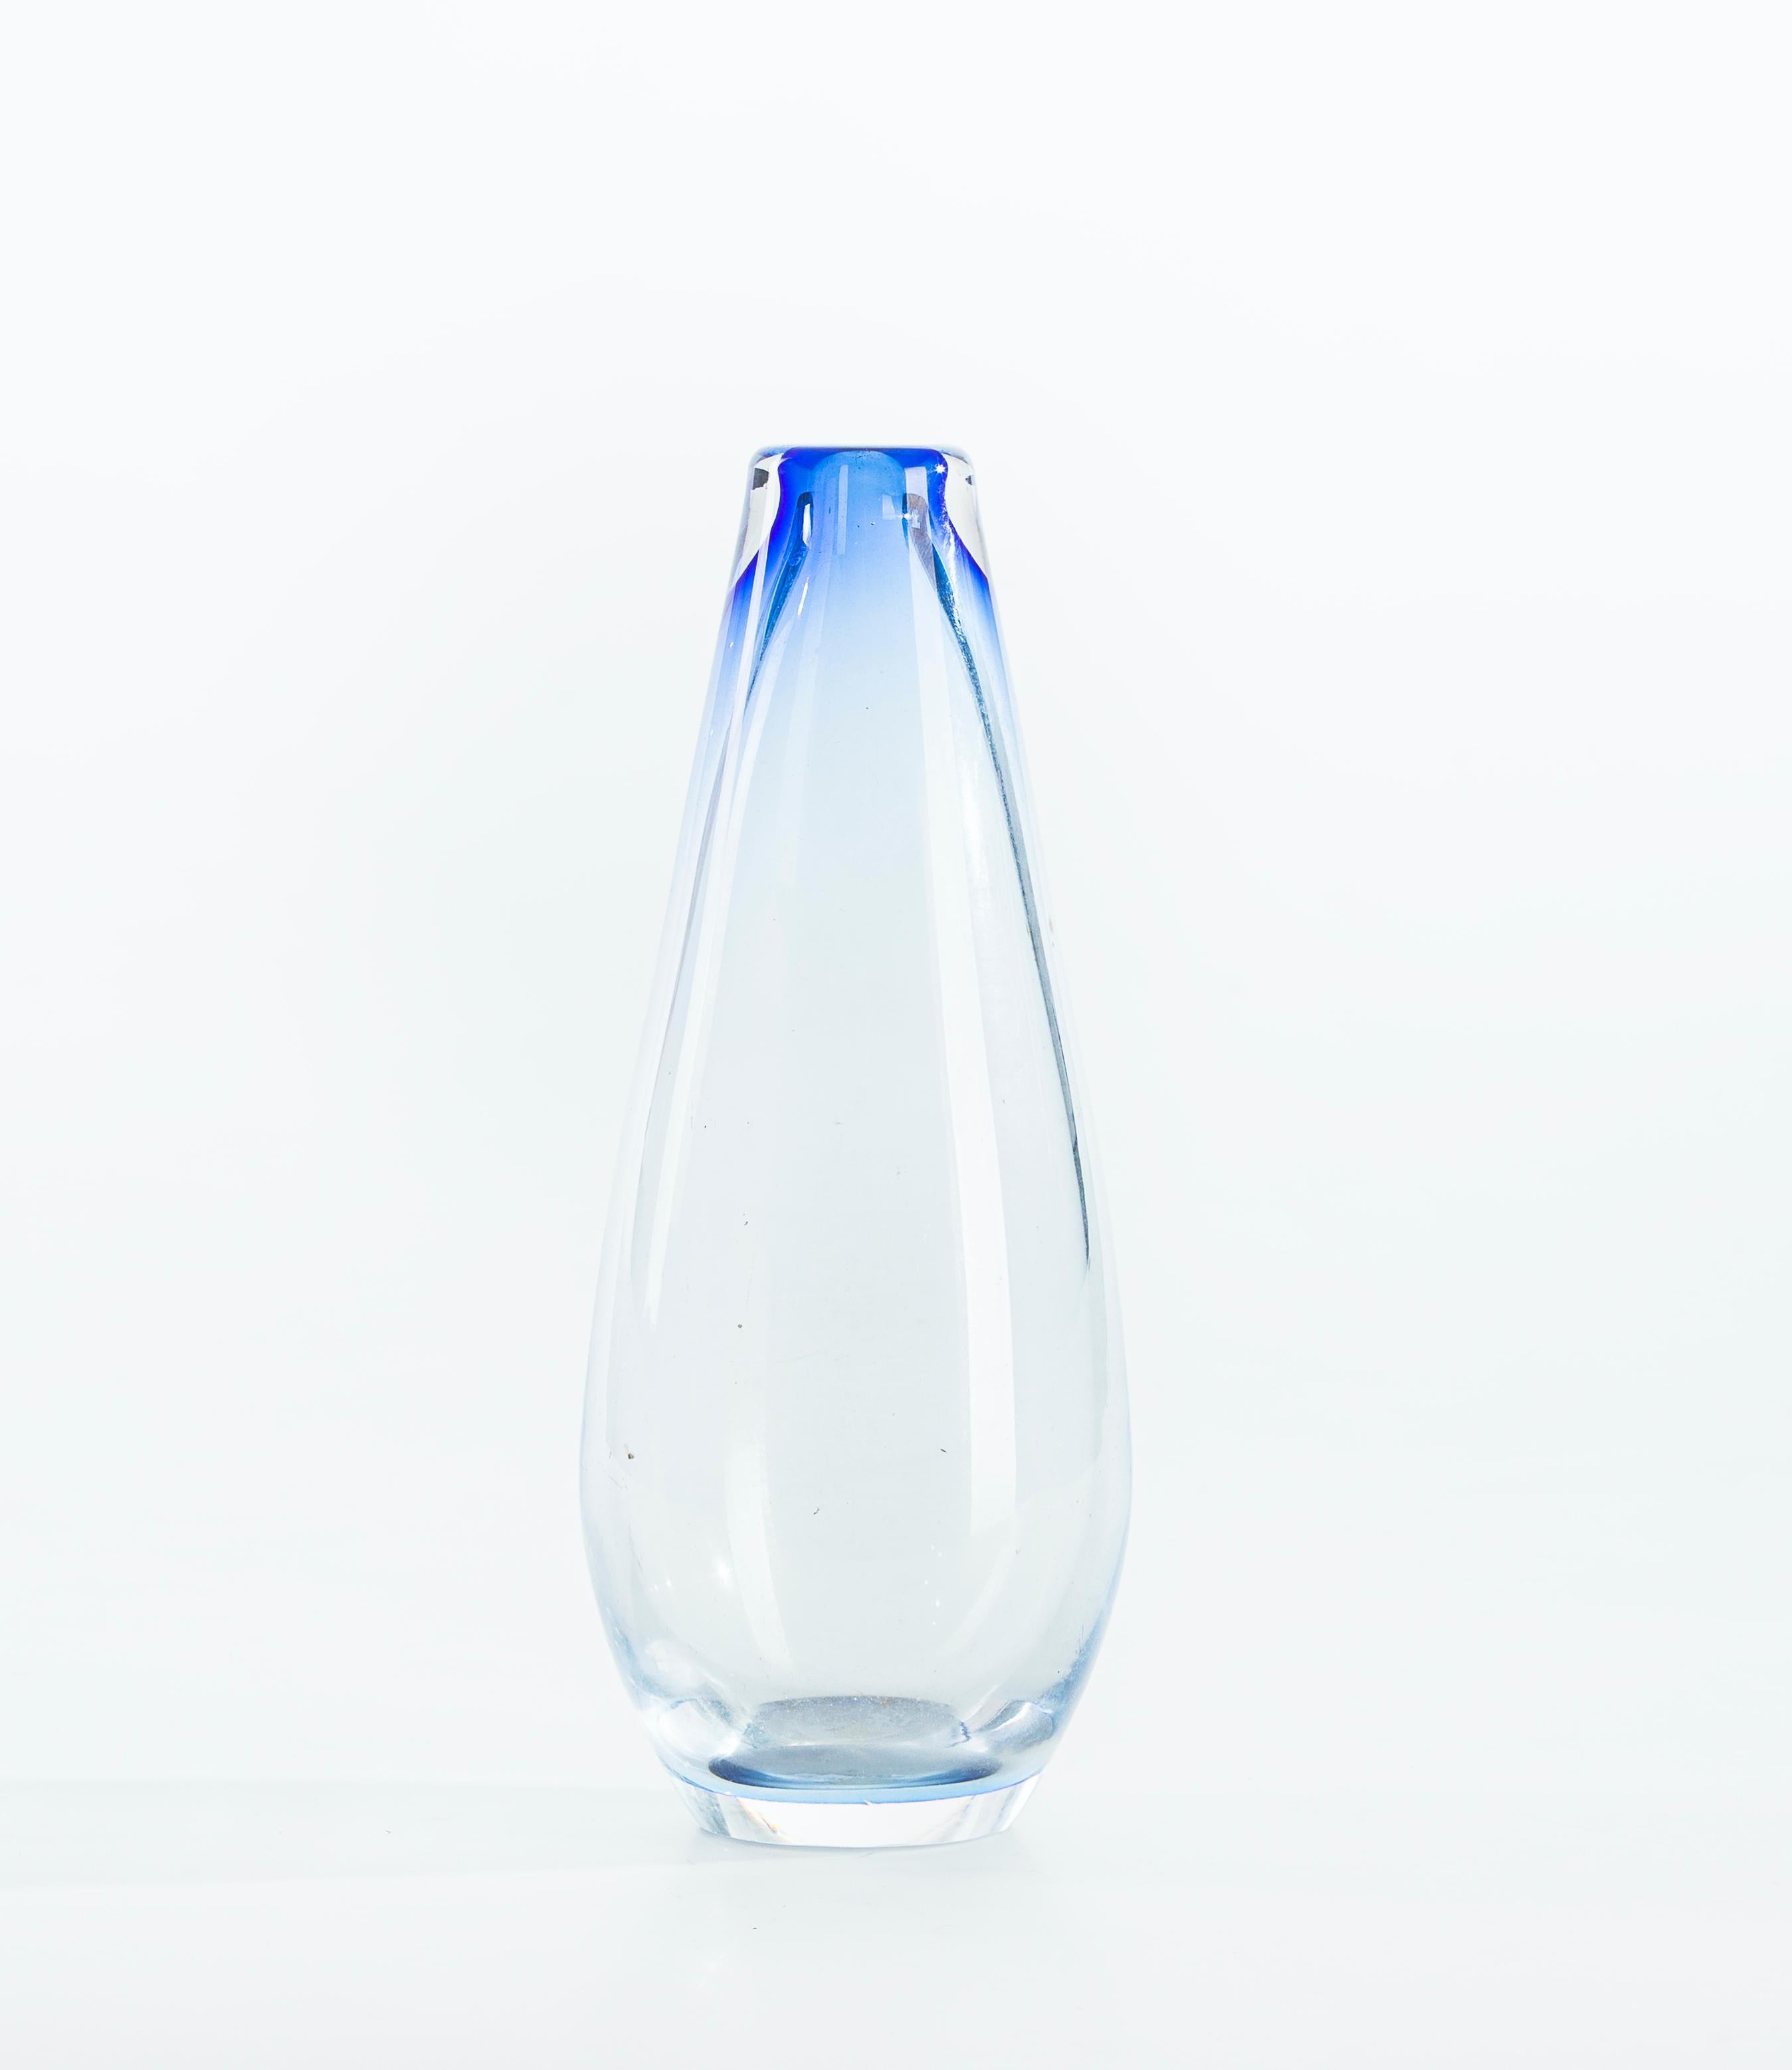 Ce Vase en verre mélangé bleu est un petit vase unifleur, dans le verre transparent, enduit, avec des nuances inclinées vers le bleu cobalt.

Fabriqué en Italie dans les années 1960. En excellent état, c'est une pièce délicieuse pour un dîner